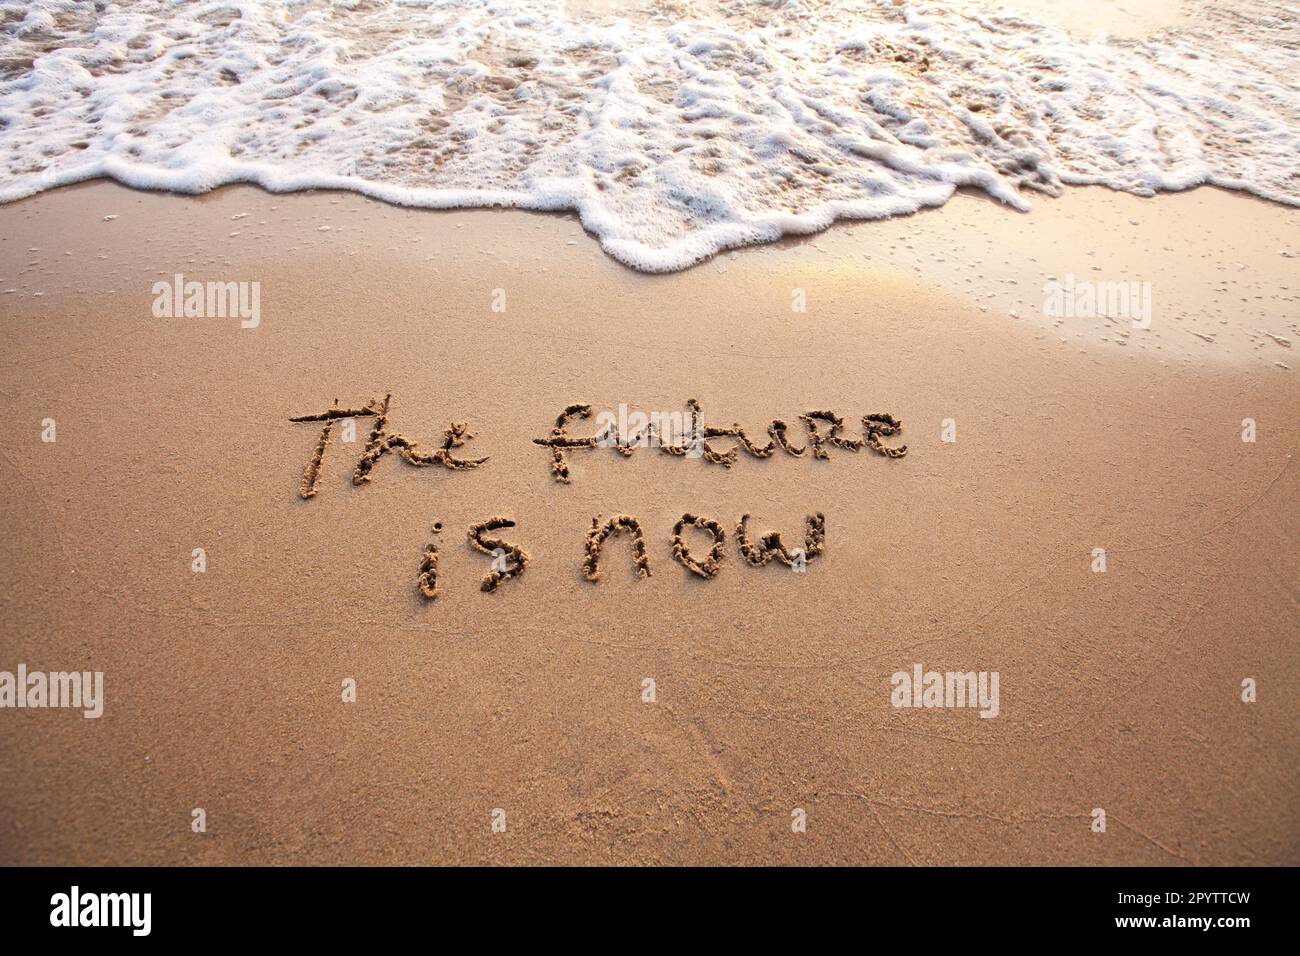 Die Zukunft ist jetzt, innovative Technologiekonzepte auf Sand geschrieben Stockfoto